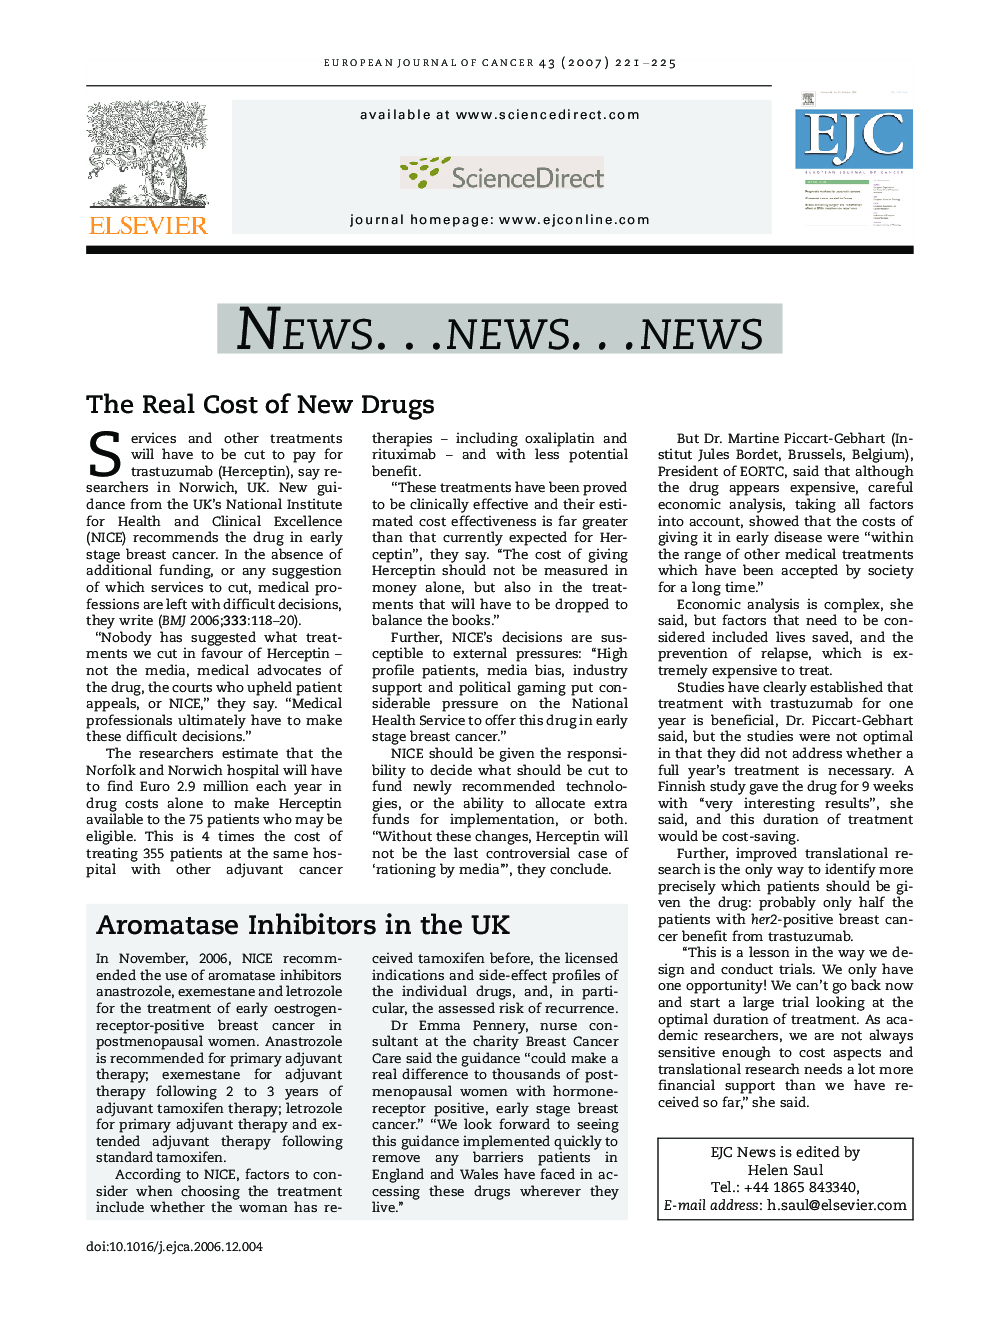 EJC NEWS, ISSUE 2, 2007